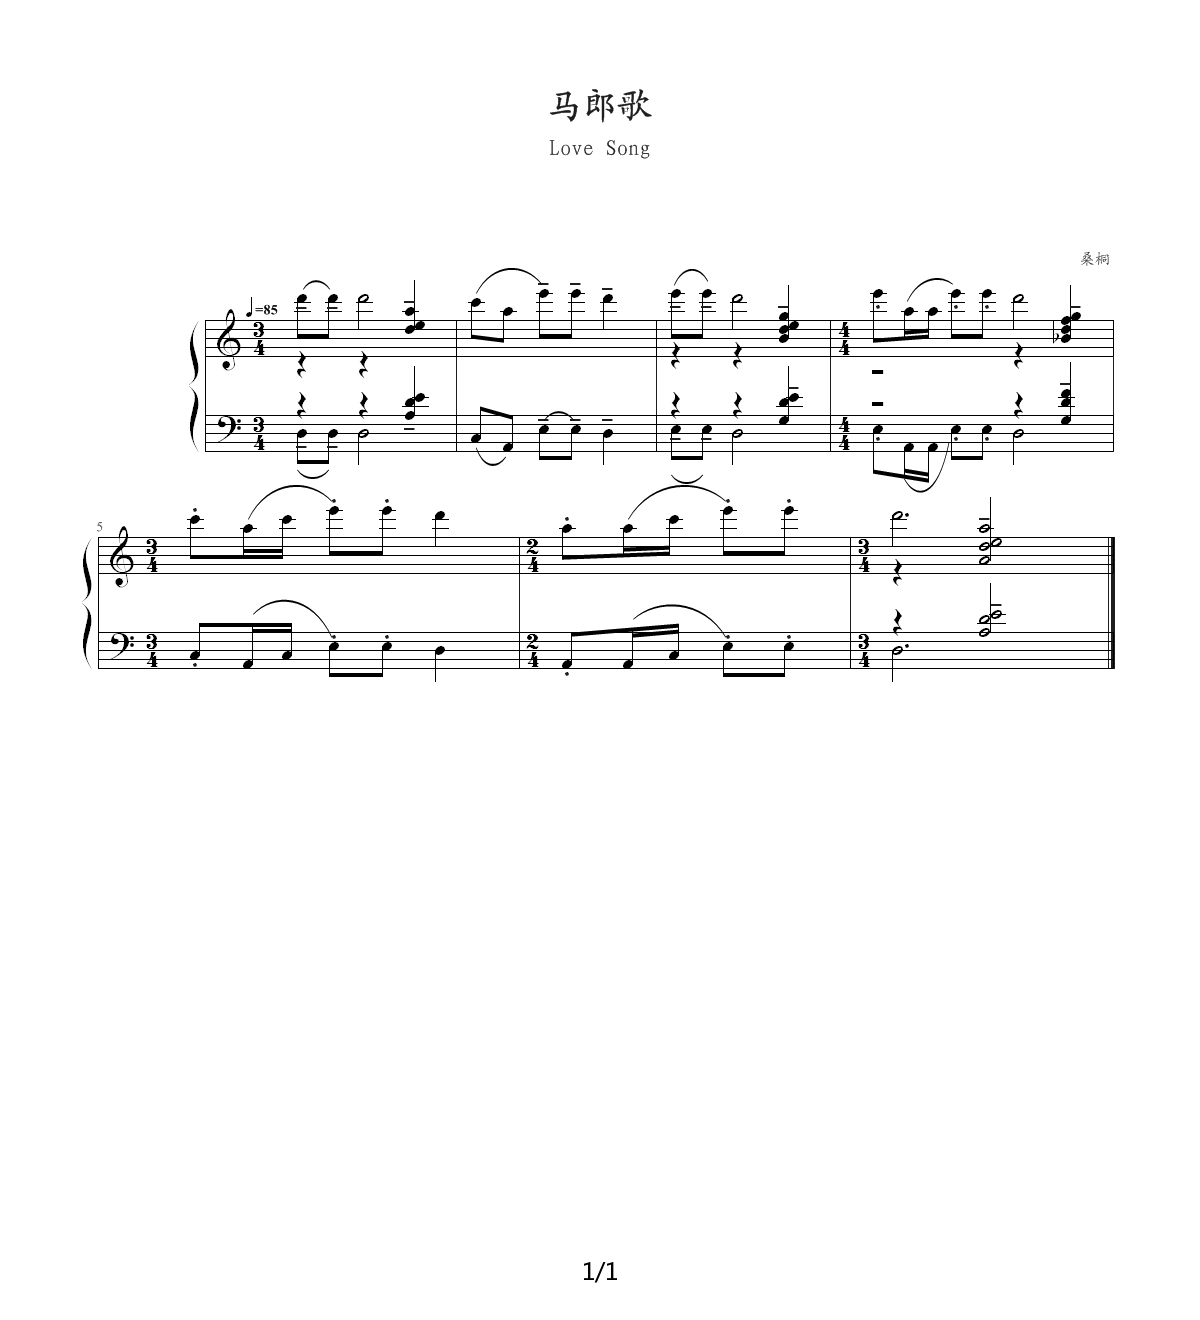 马郎歌钢琴谱|马郎歌最新钢琴谱|马郎歌钢琴谱下载